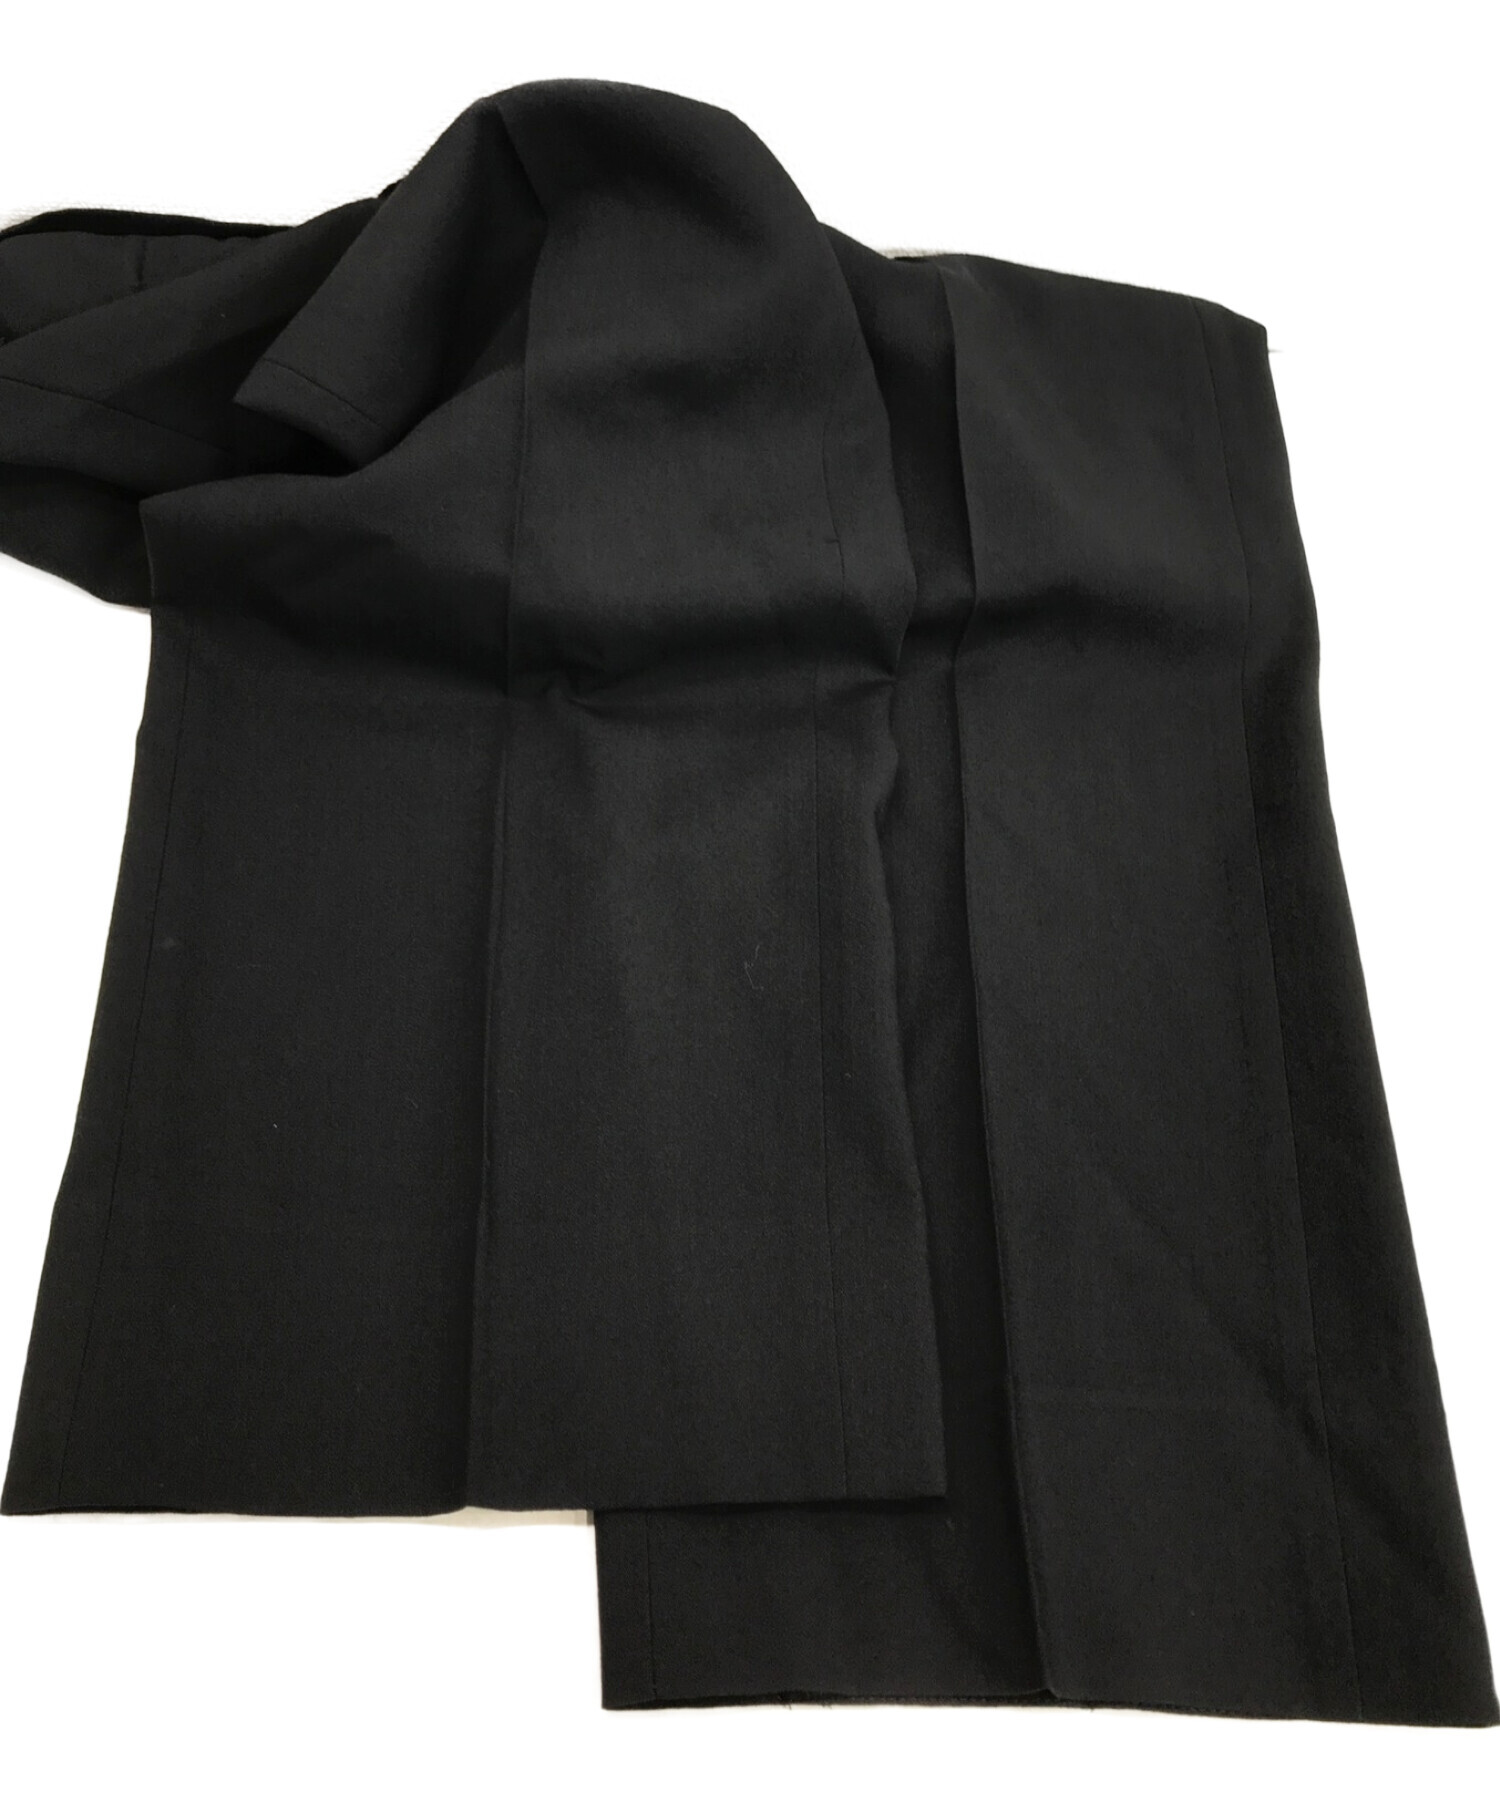 EMPORIO ARMANI (エンポリオアルマーニ) セットアップスーツ ブラック サイズ:サイズ表記無し